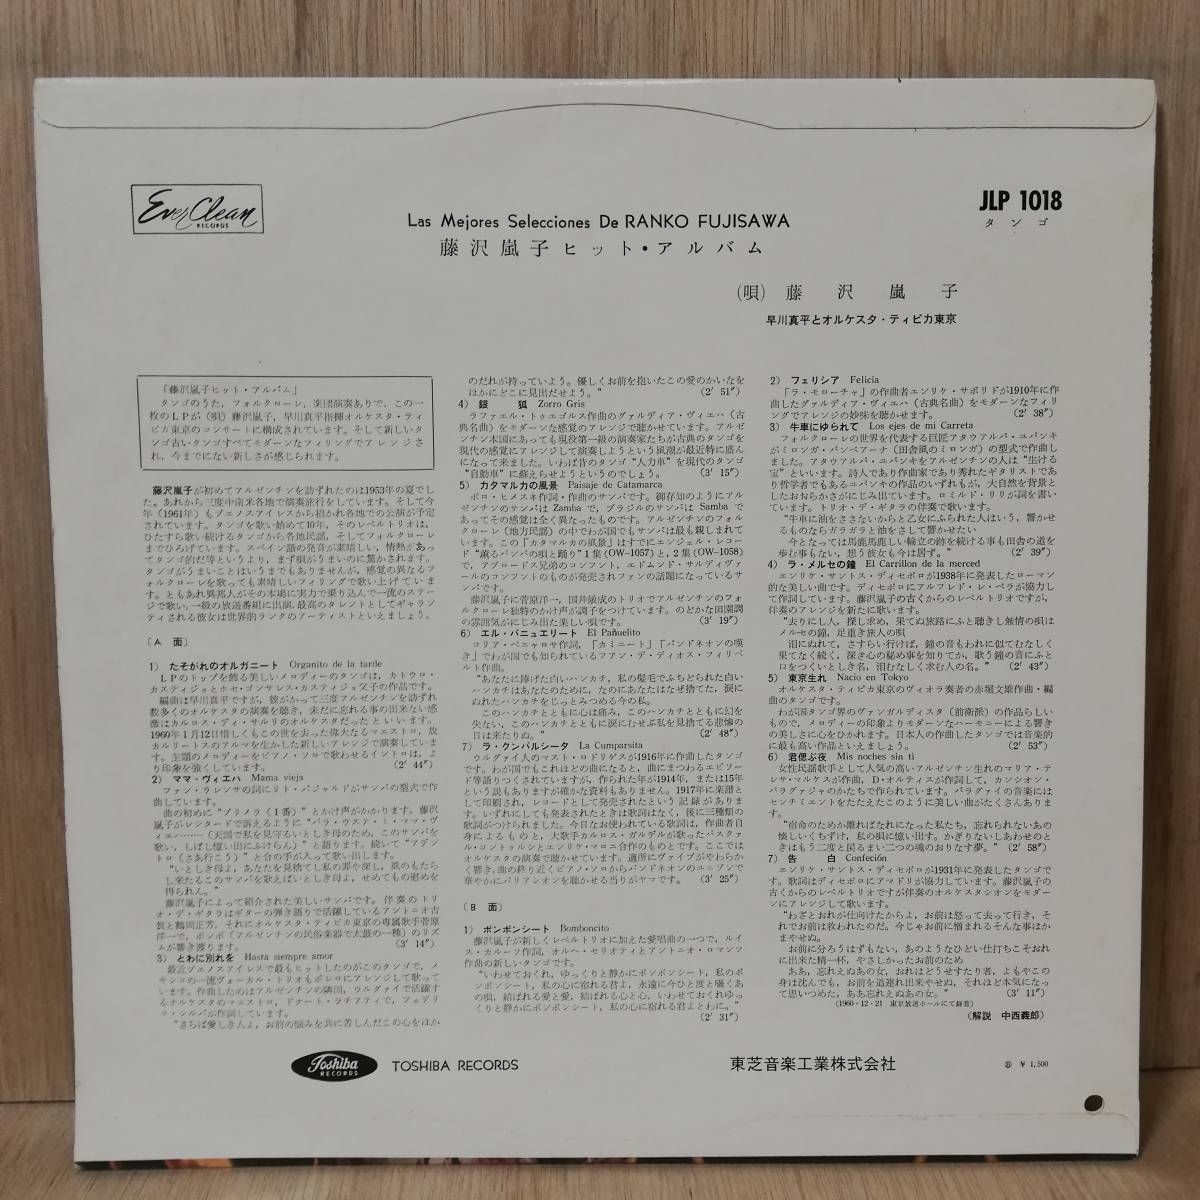 【LP】赤盤 - 藤沢嵐子 / orquesta tipica - LAS MEJORES SELECCIONES DE RANKO FUJISAWA - JLP1018 - *15_画像2